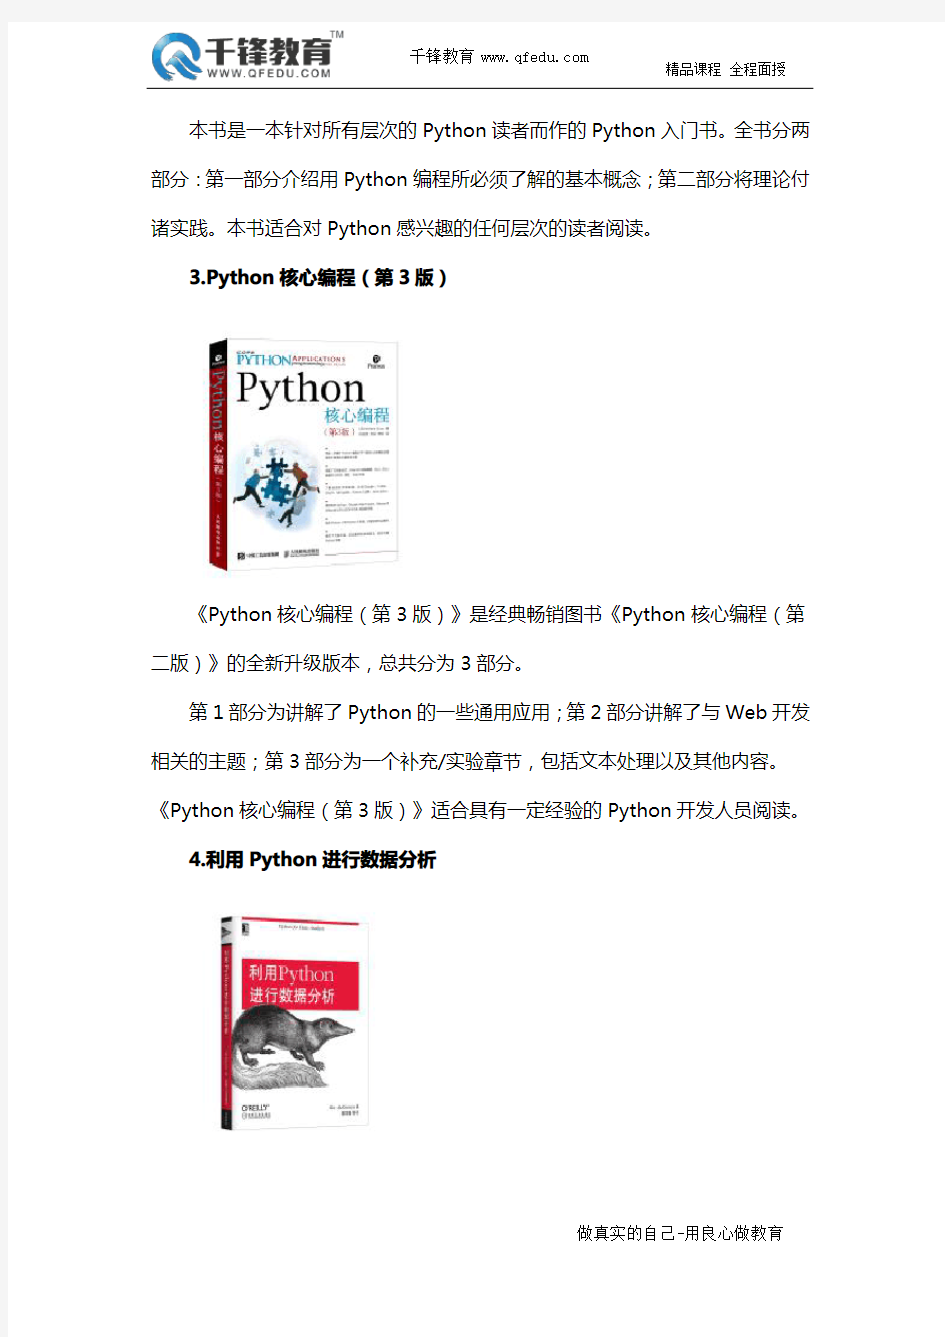 学习Python开发必看的十本书